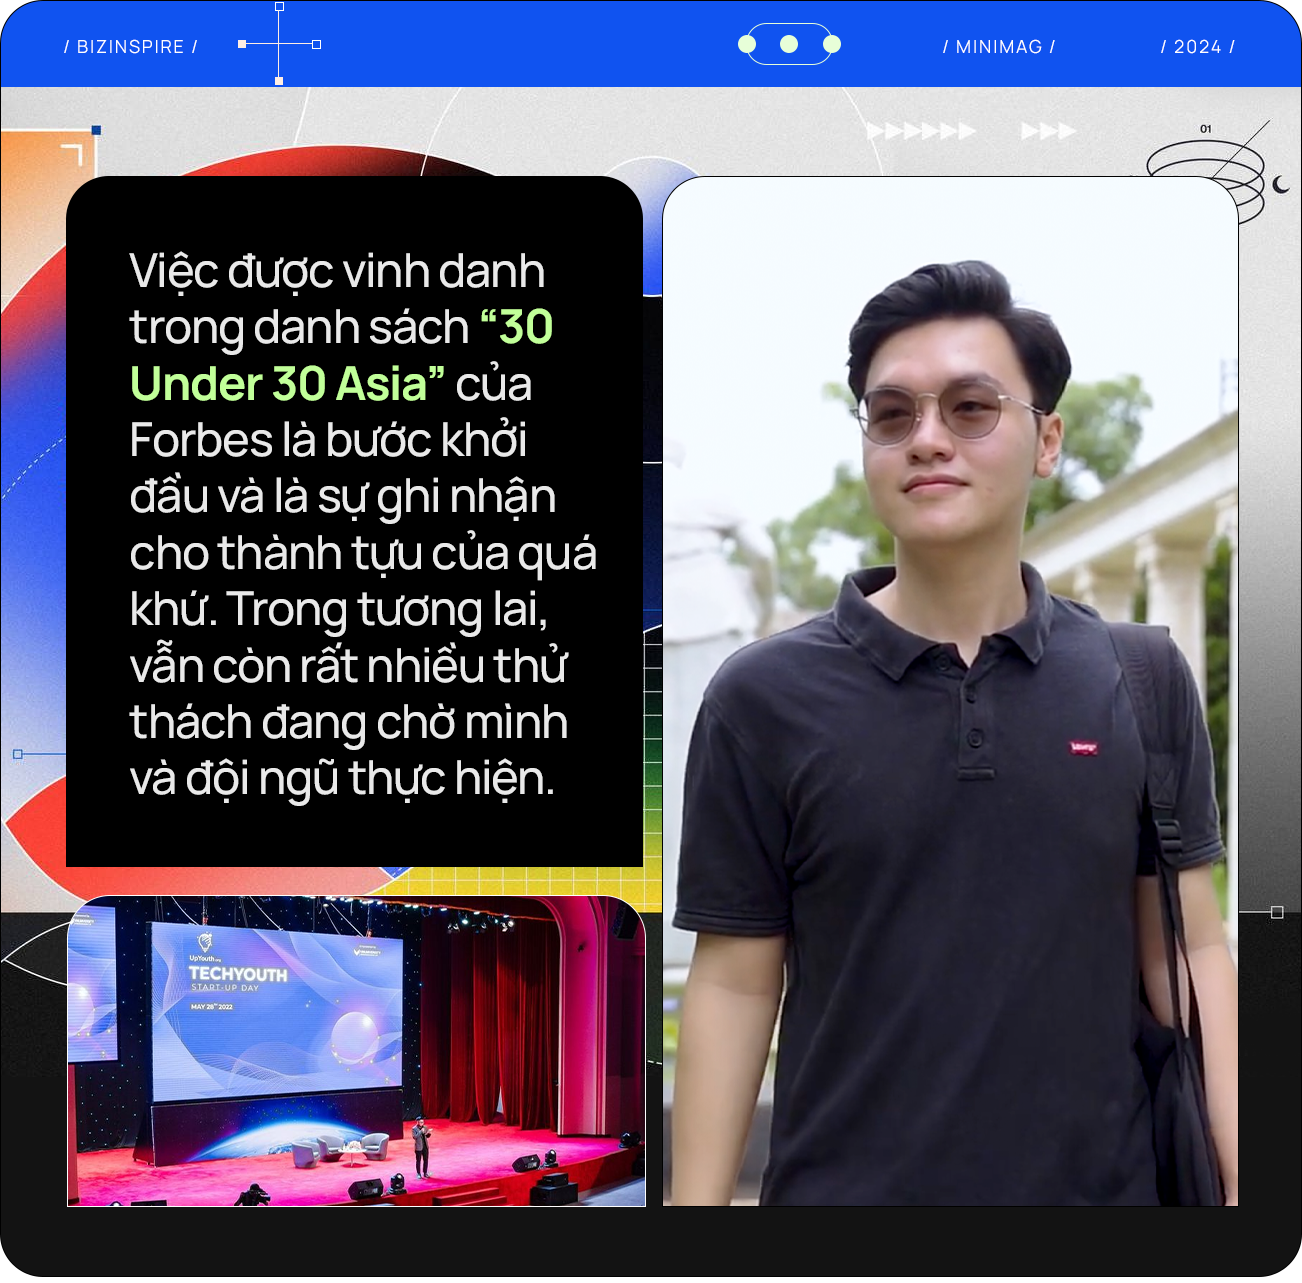 Trò chuyện với nam sinh Việt trẻ nhất trong lịch sử được Forbes vinh danh ‘30 Under 30 Asia’: Mơ người trẻ Việt có thể thay đổi thế giới như Mark Zuckerberg, Bill Gates- Ảnh 3.